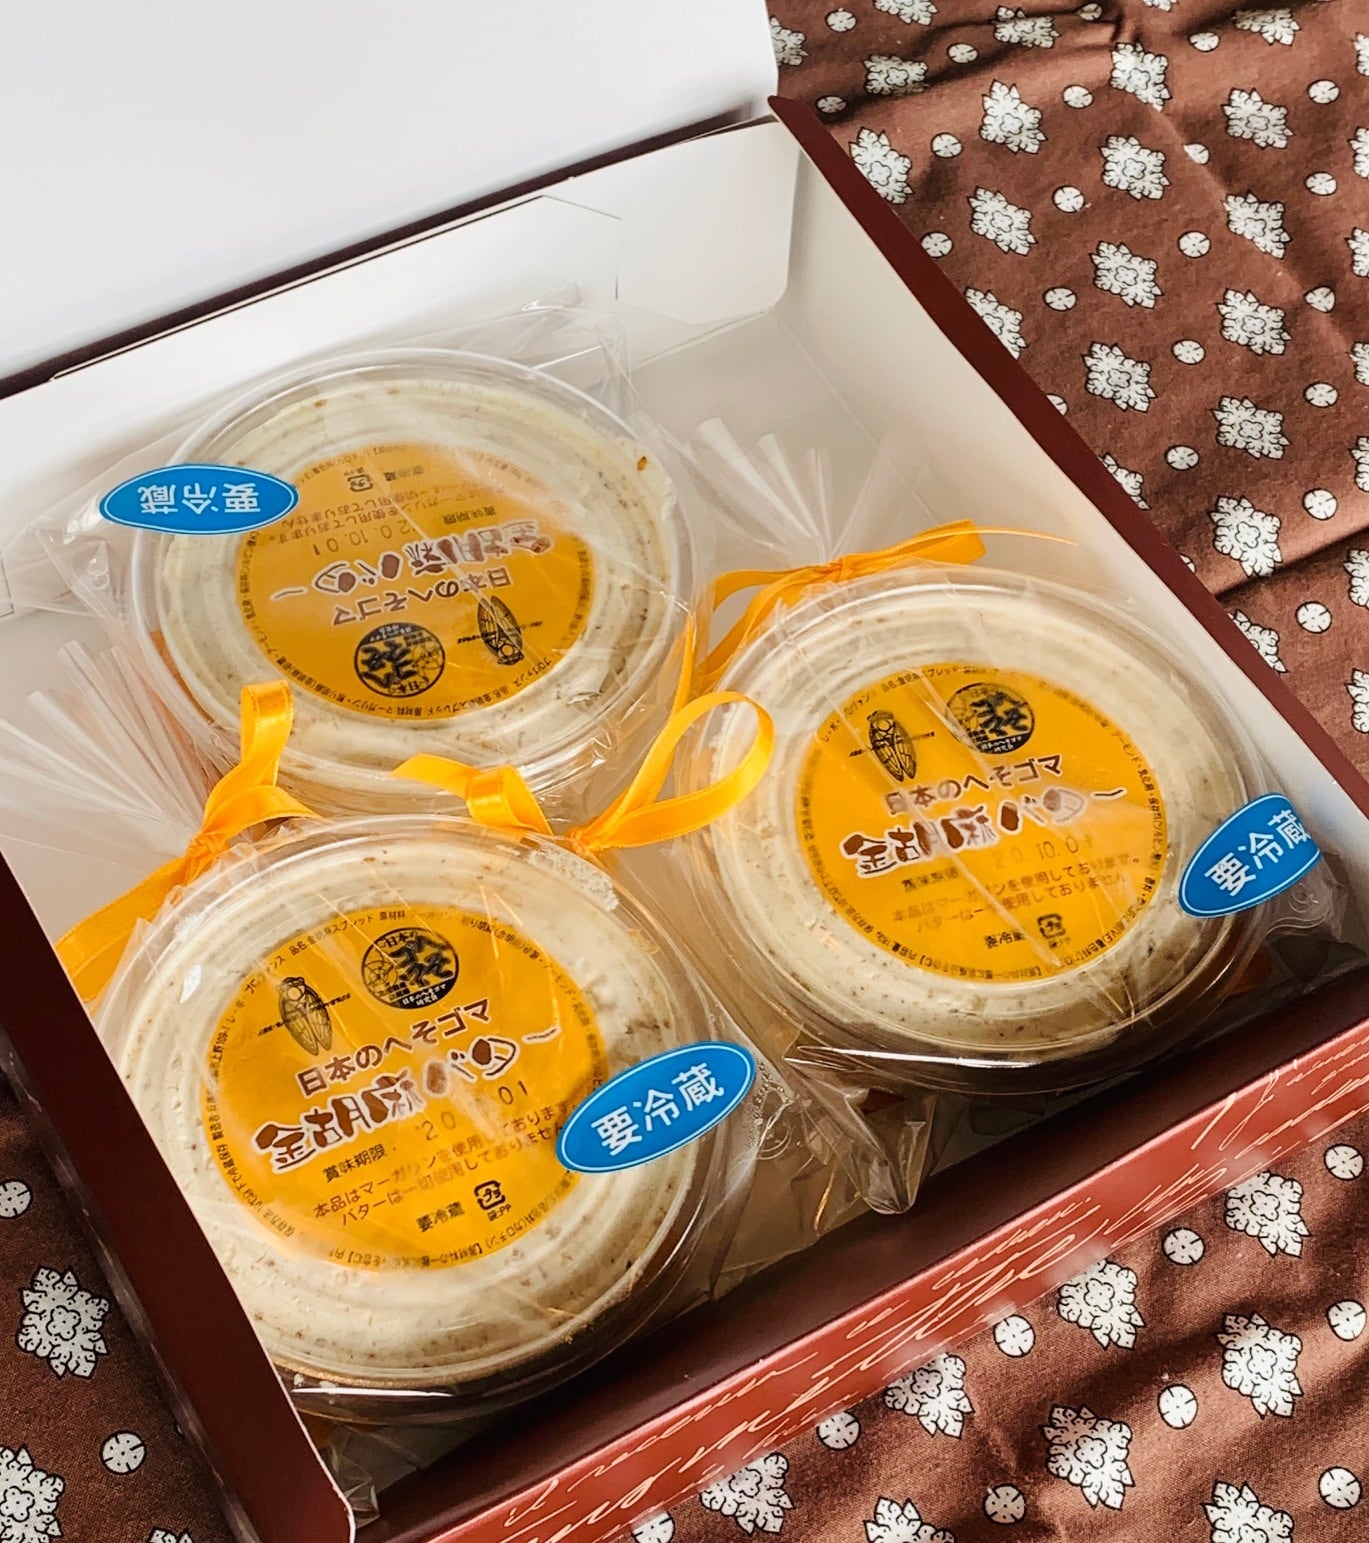 日本のへそゴマ金胡麻バター130gX3個入り【クール冷凍便にてお届けします】到着後は冷蔵庫(10度以下)にて保管の上賞味期限に関わらずお早めにお召し上がりください。　ﾚ・ﾎﾞ・ﾌﾟﾛｳﾞｧﾝｽ／ｵﾝﾗｲﾝｼｮｯﾌﾟ